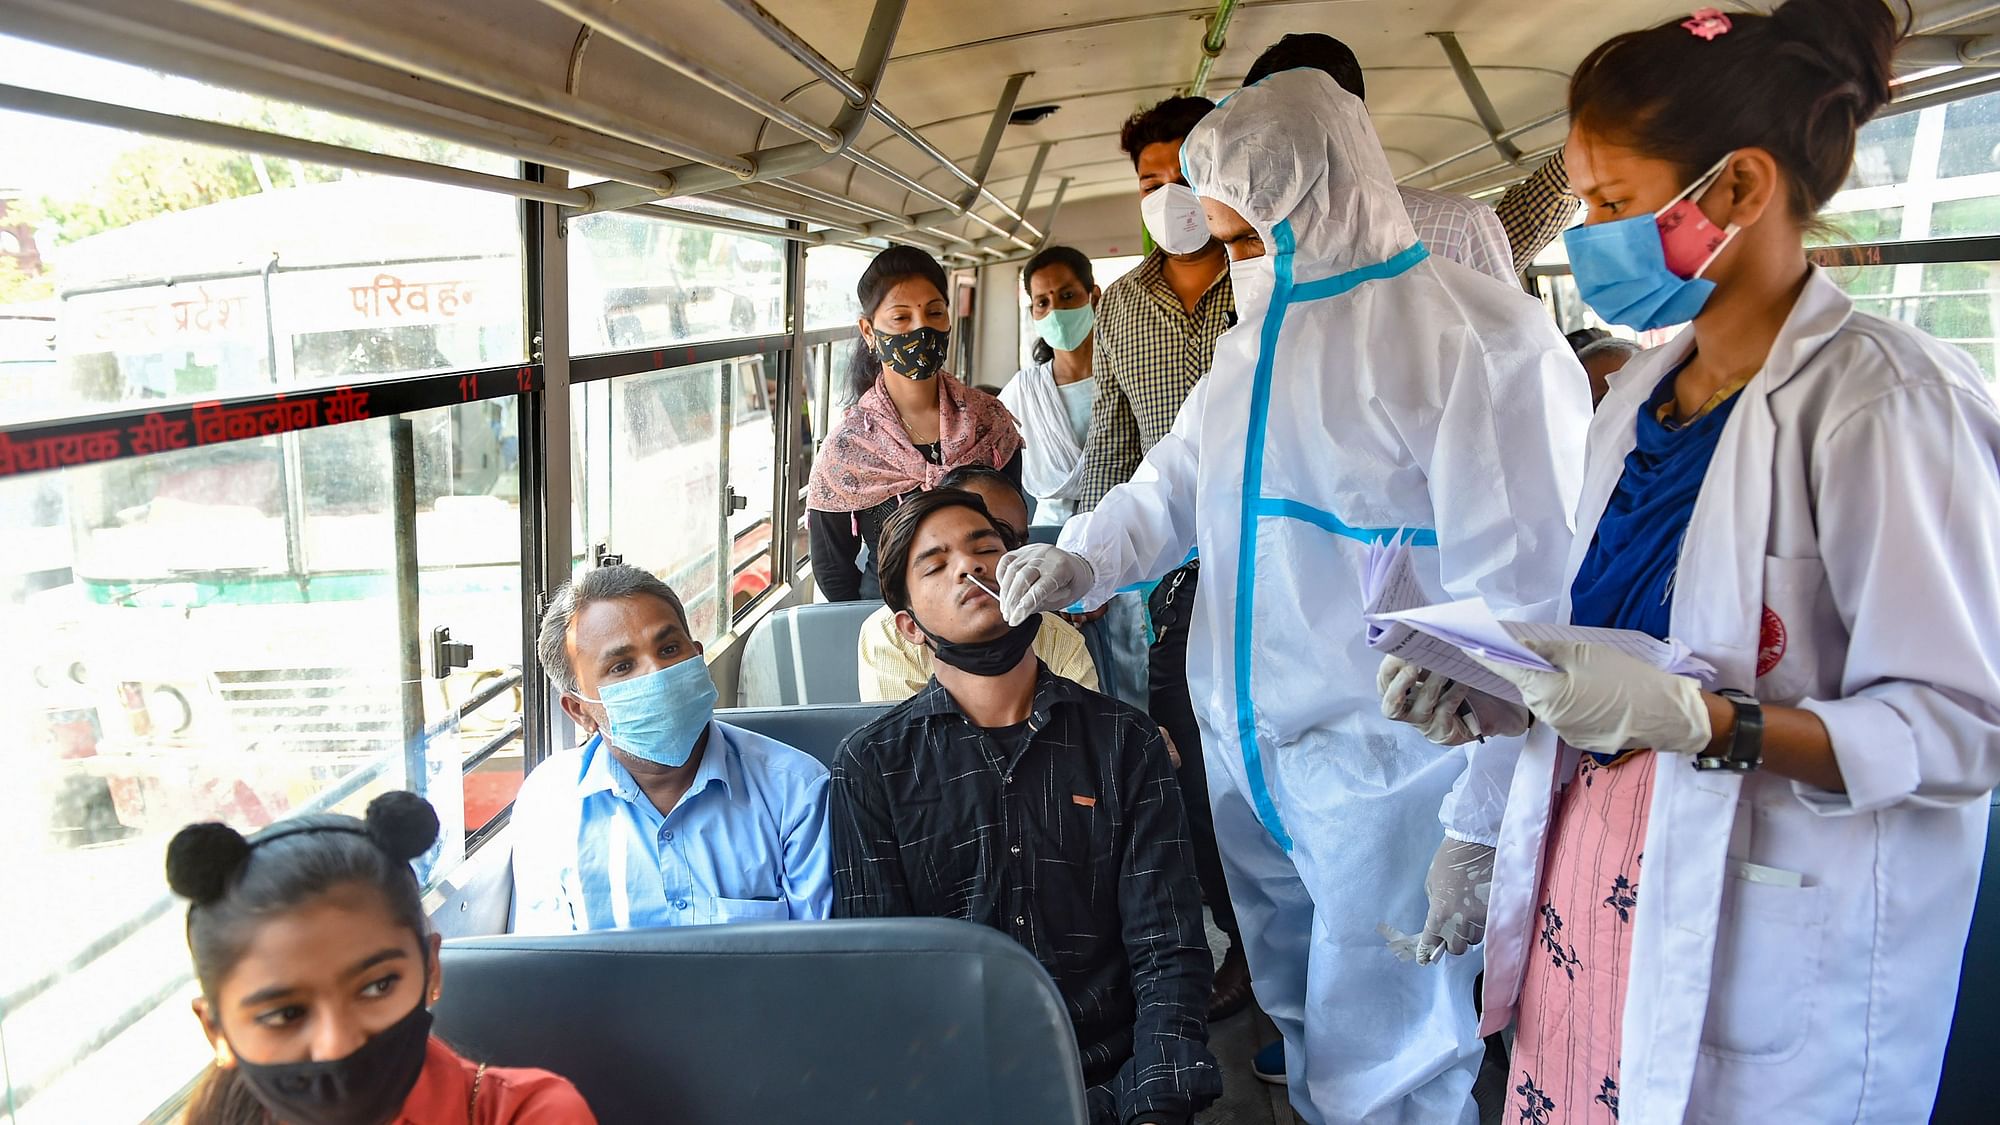 लखनऊ में आलमबाग बस स्टेशन पर लोगों का टेस्ट करते मेडिकल कर्मचारी, 24 मई 2021 की तस्वीर